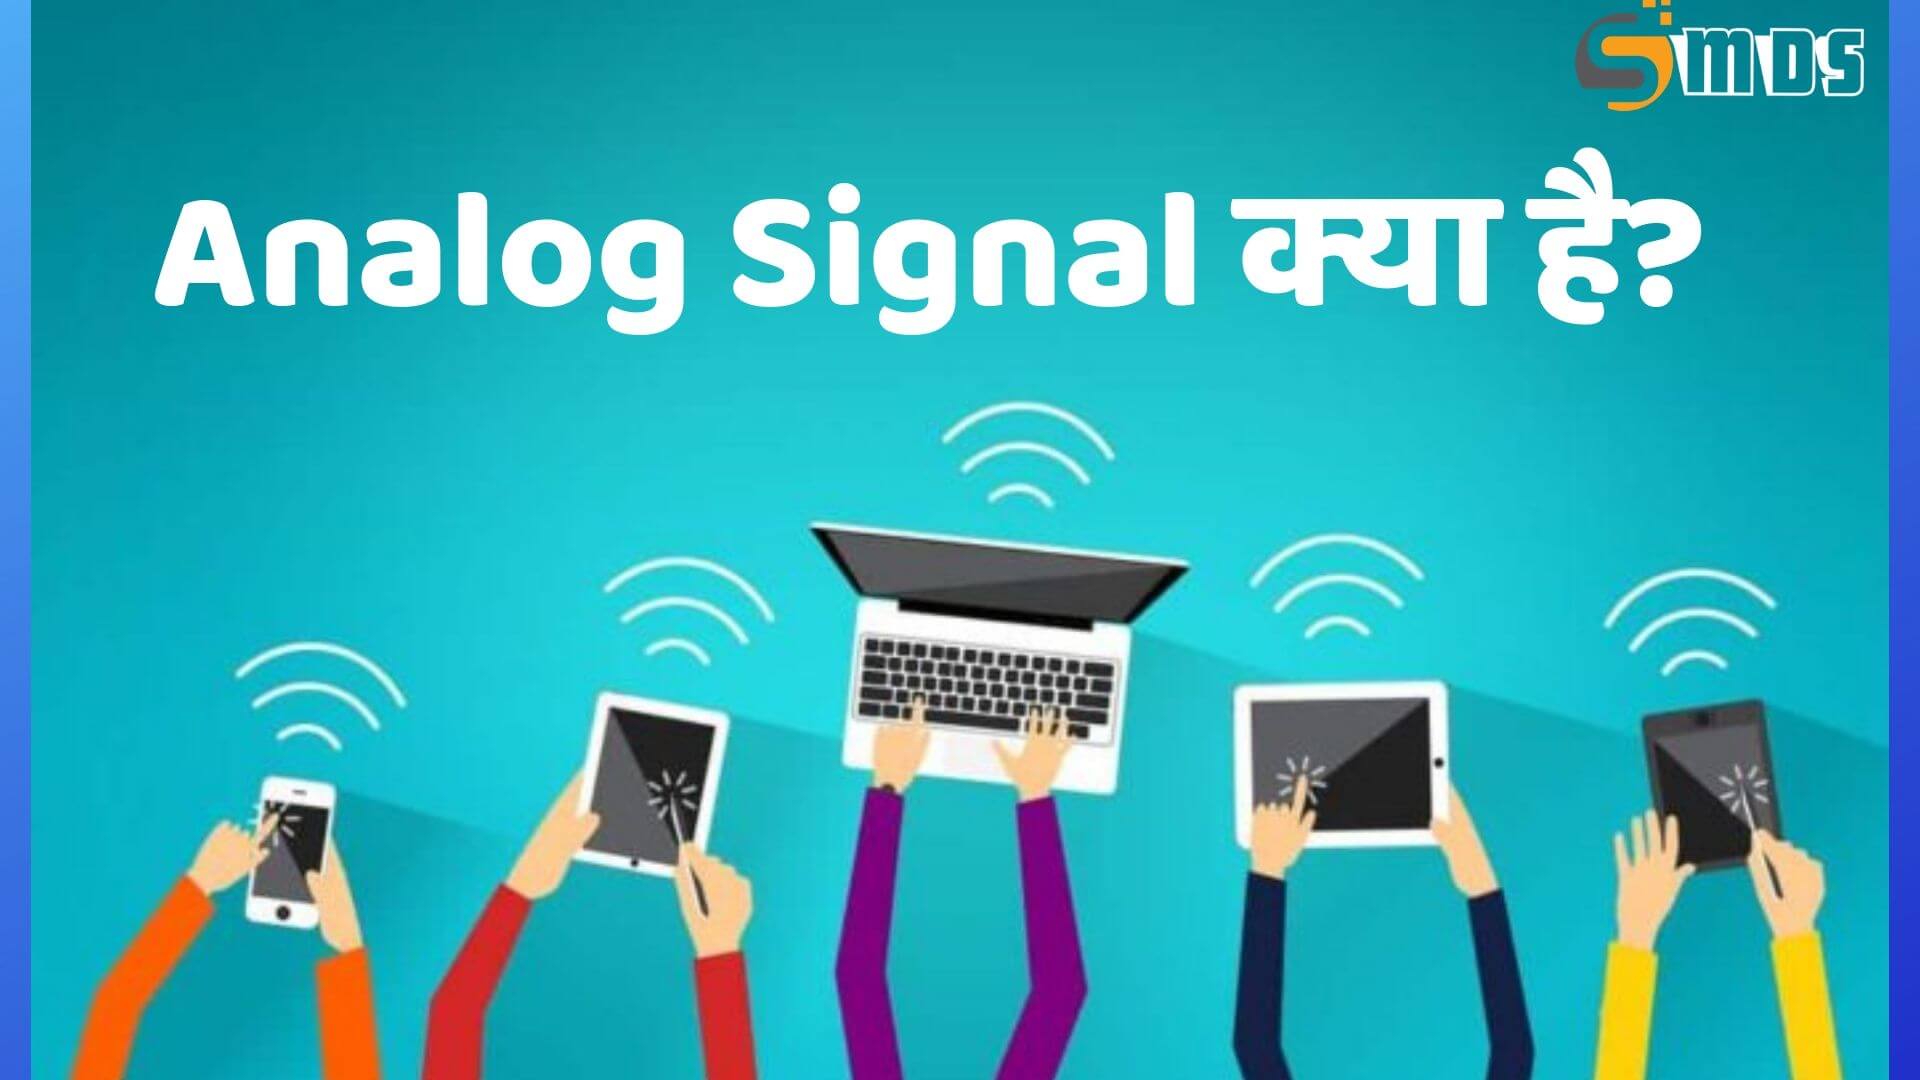 एनालॉग सिग्नल क्या है – What is Analog Signal in Hindi